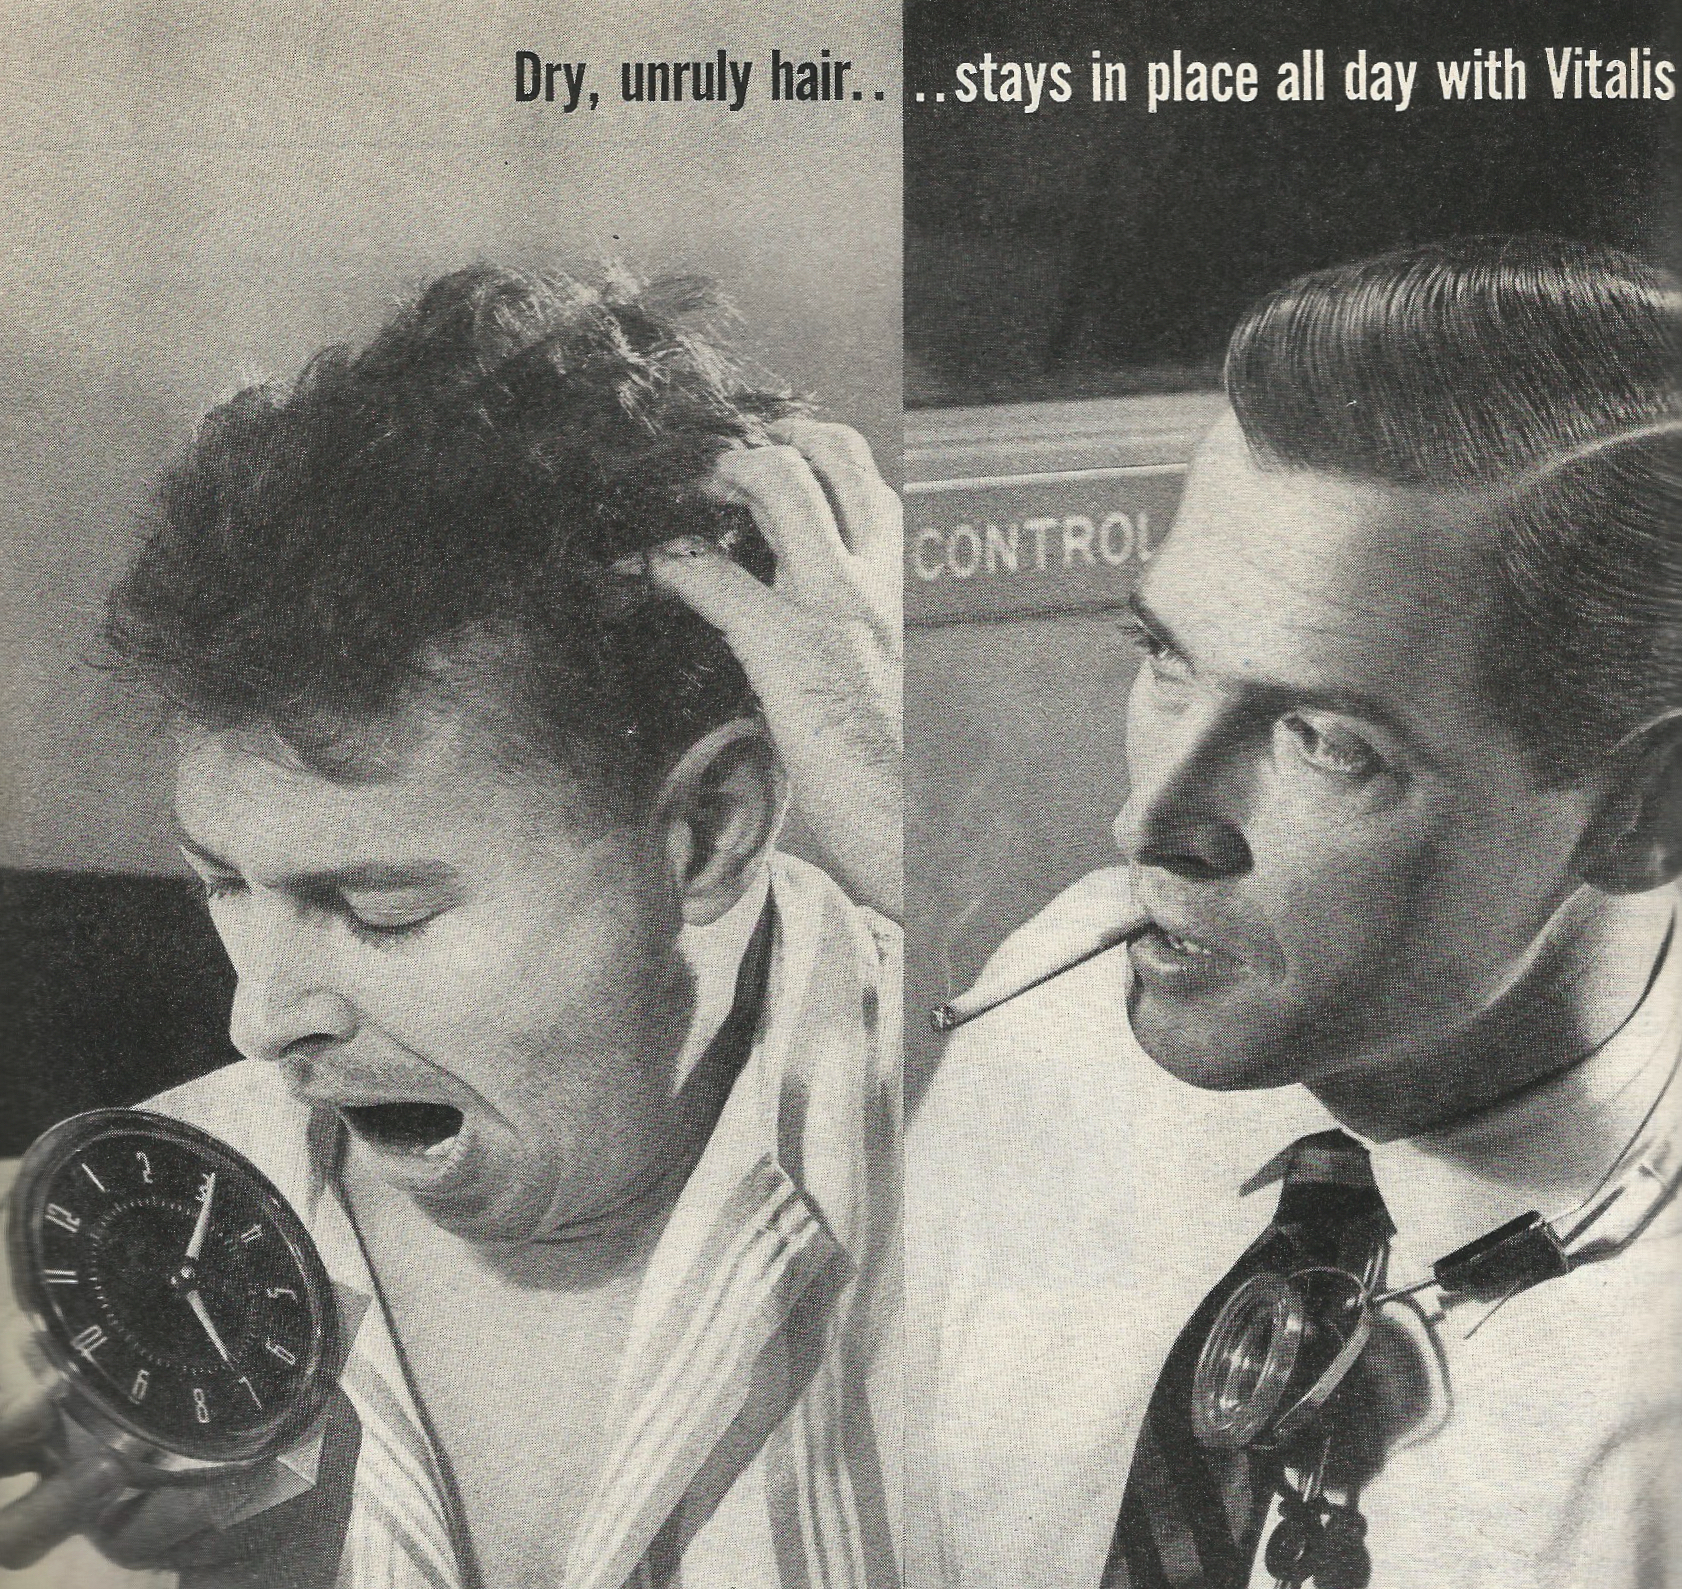 Vintage grooming ads